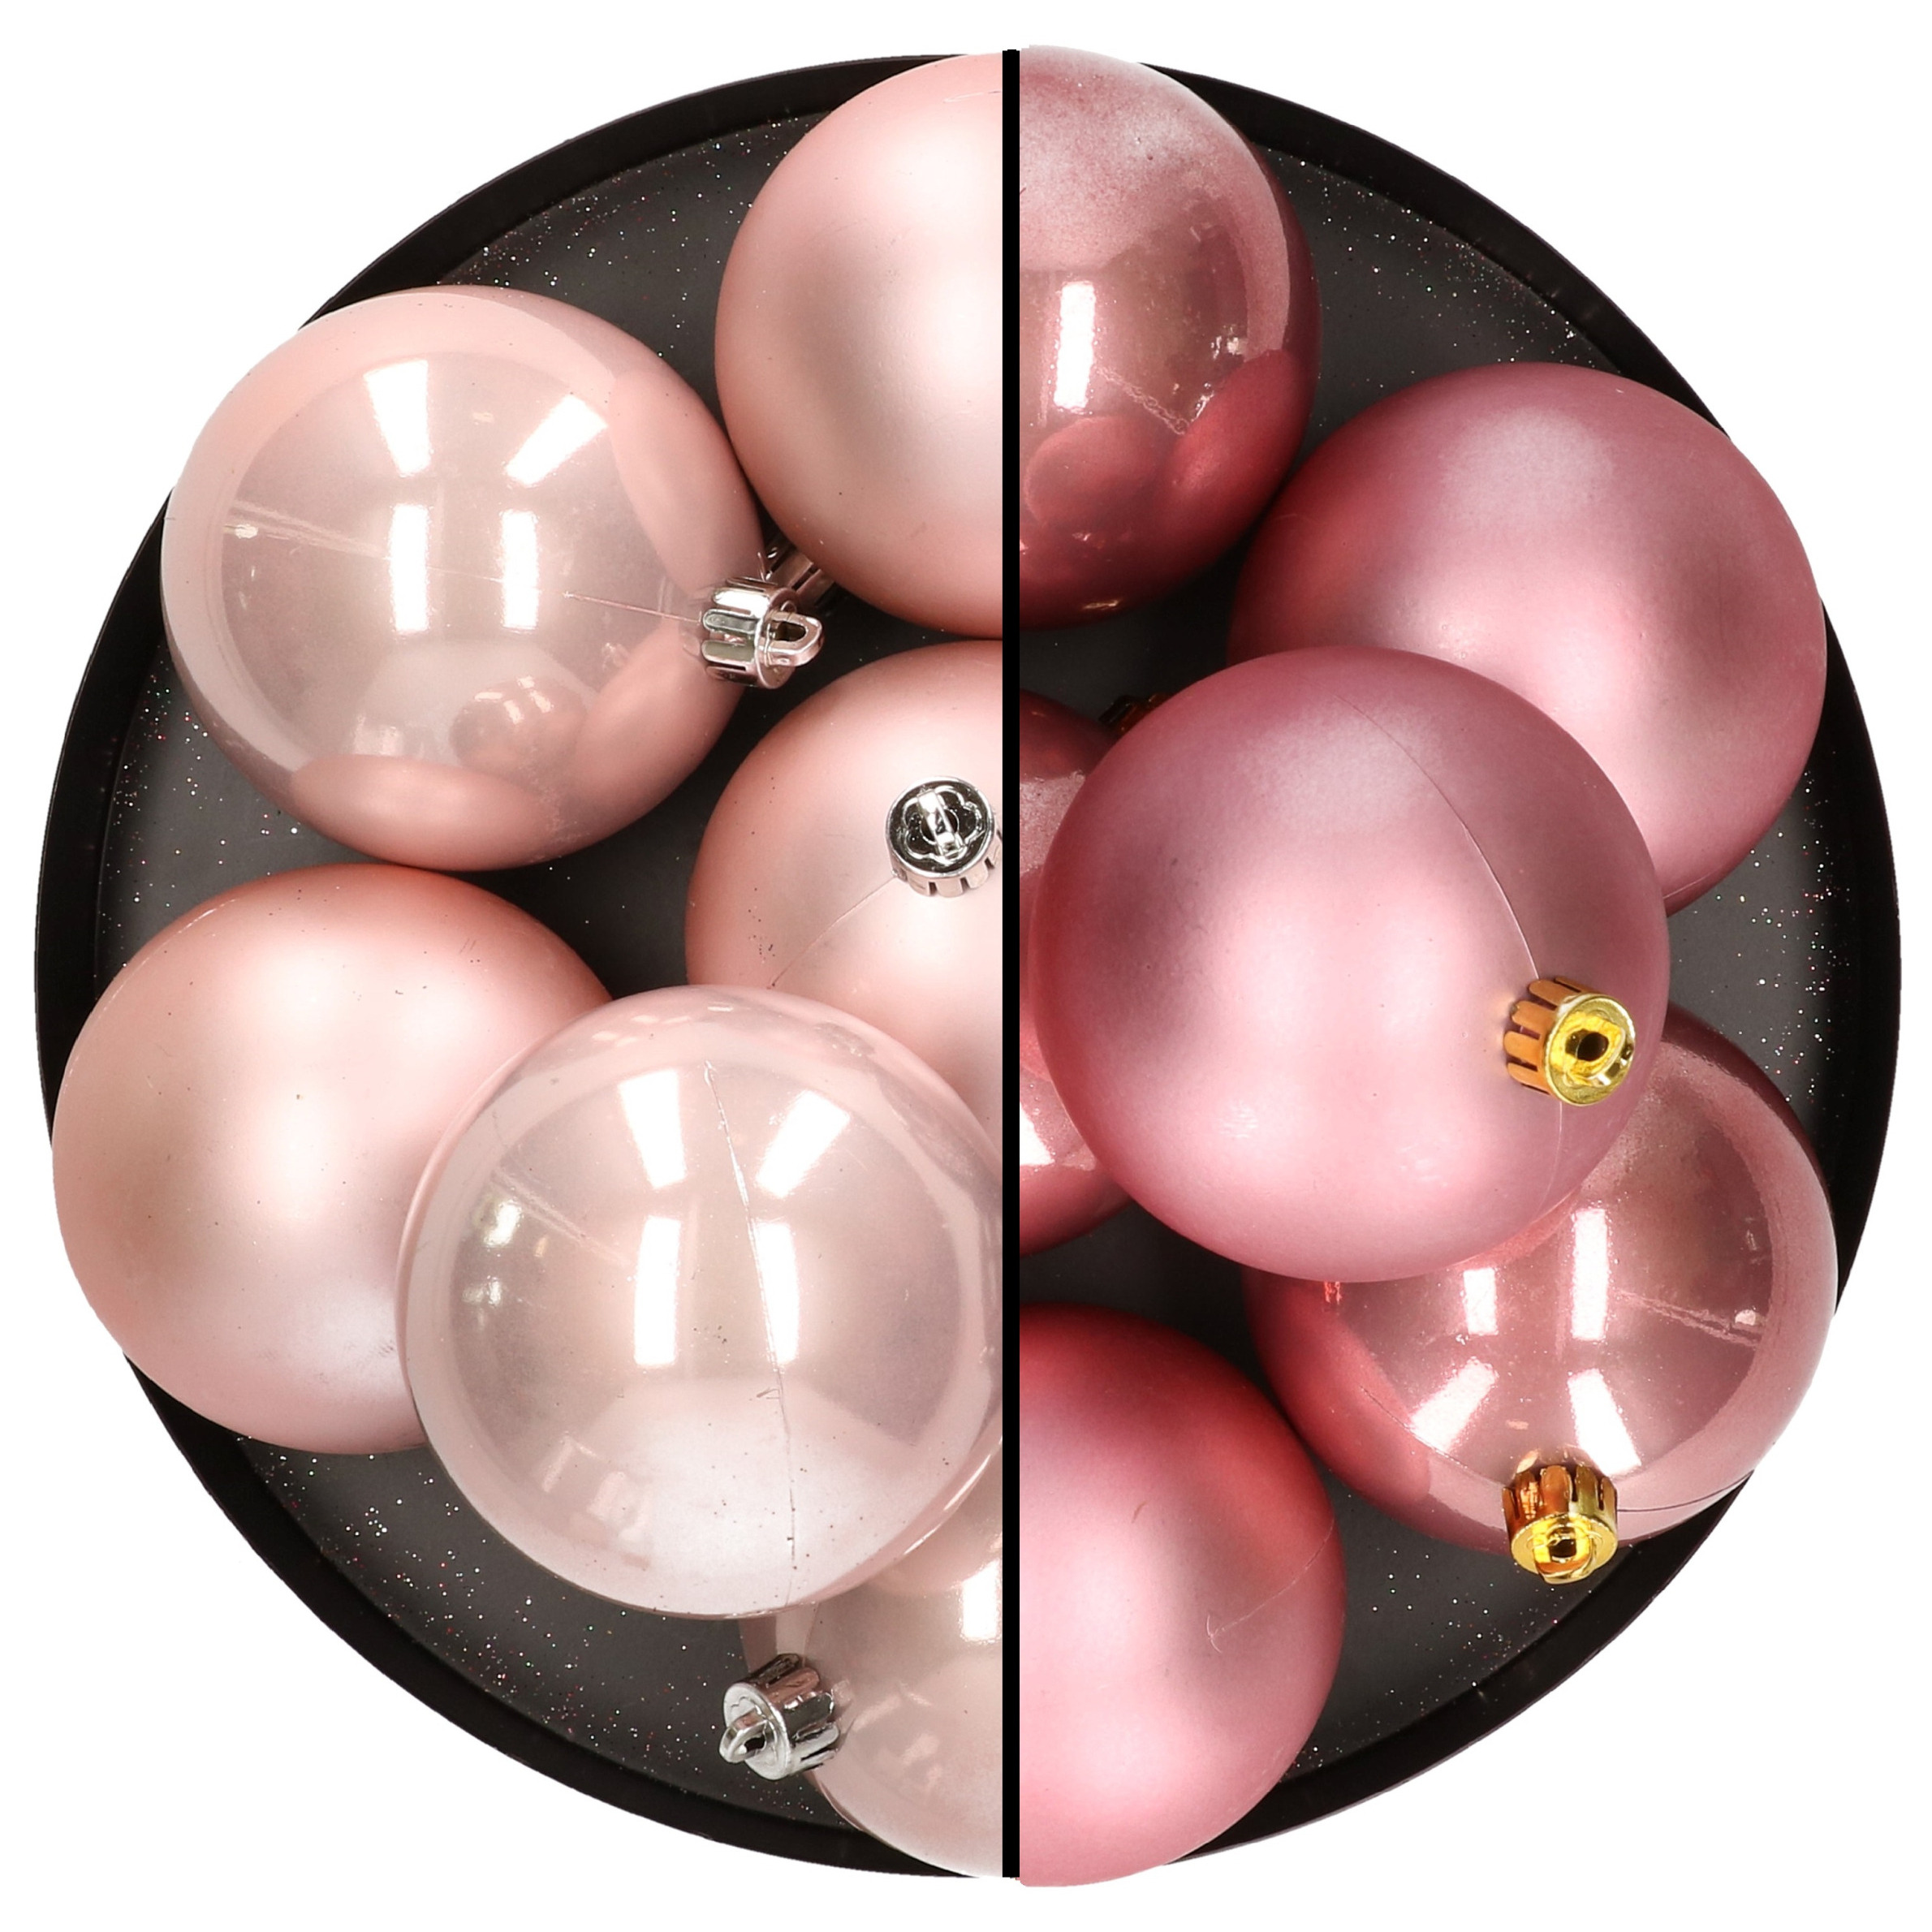 12x stuks kunststof kerstballen 8 cm mix van lichtroze en velvet roze